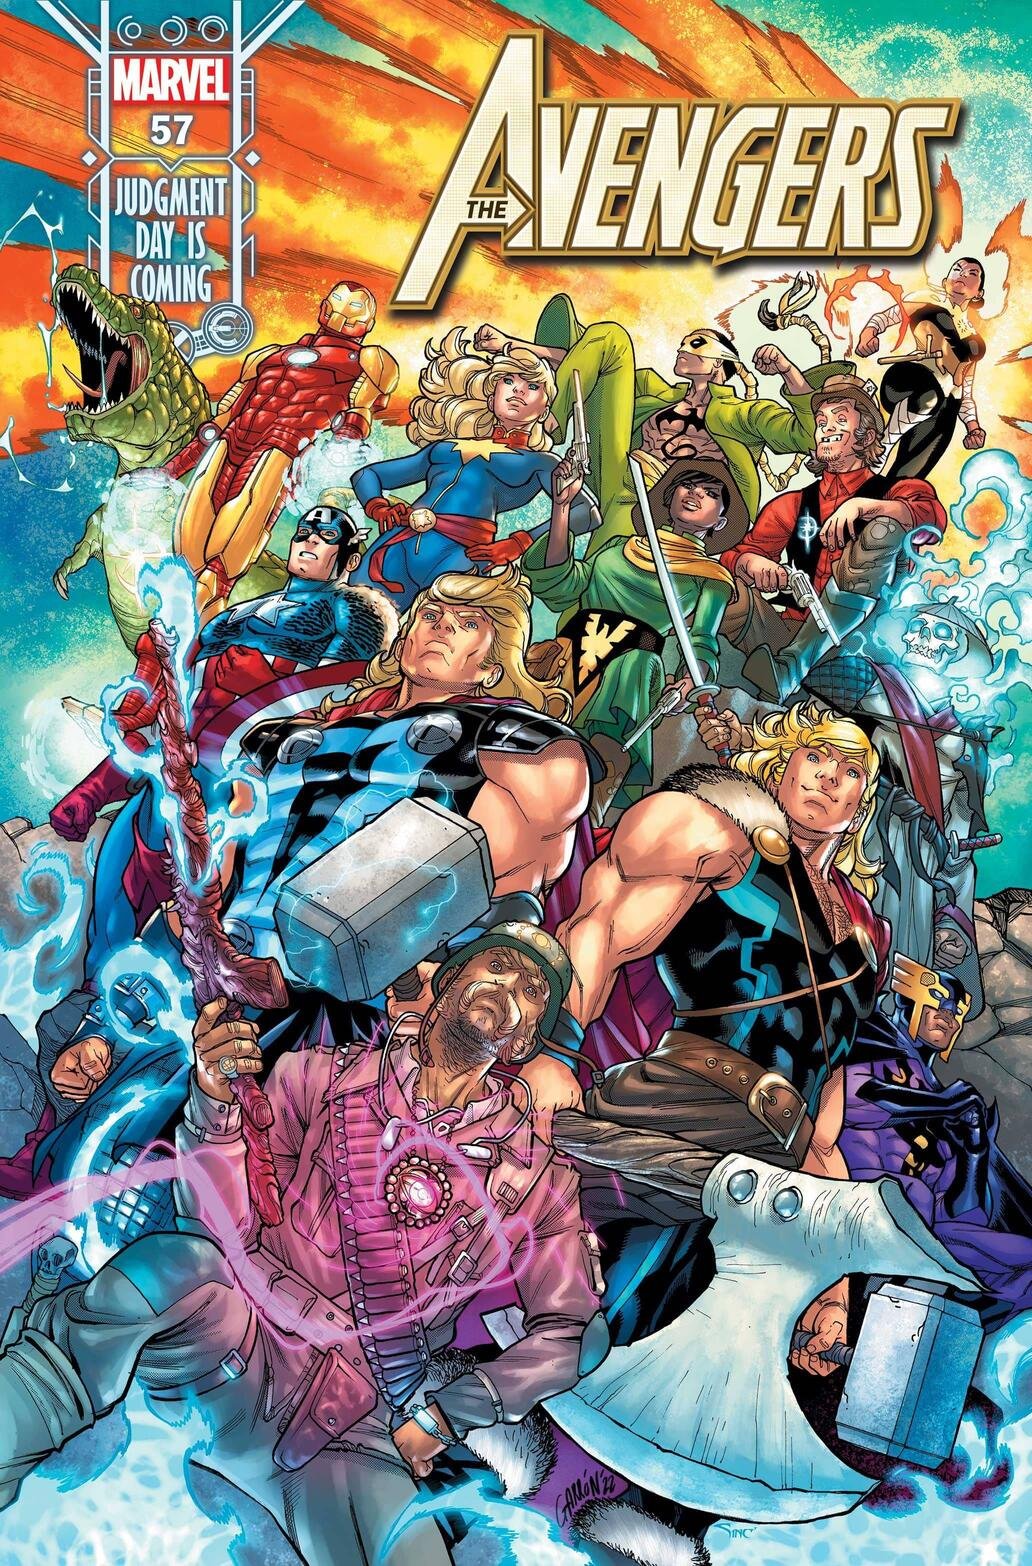 Cover di Avengers 57 di Javier Garron